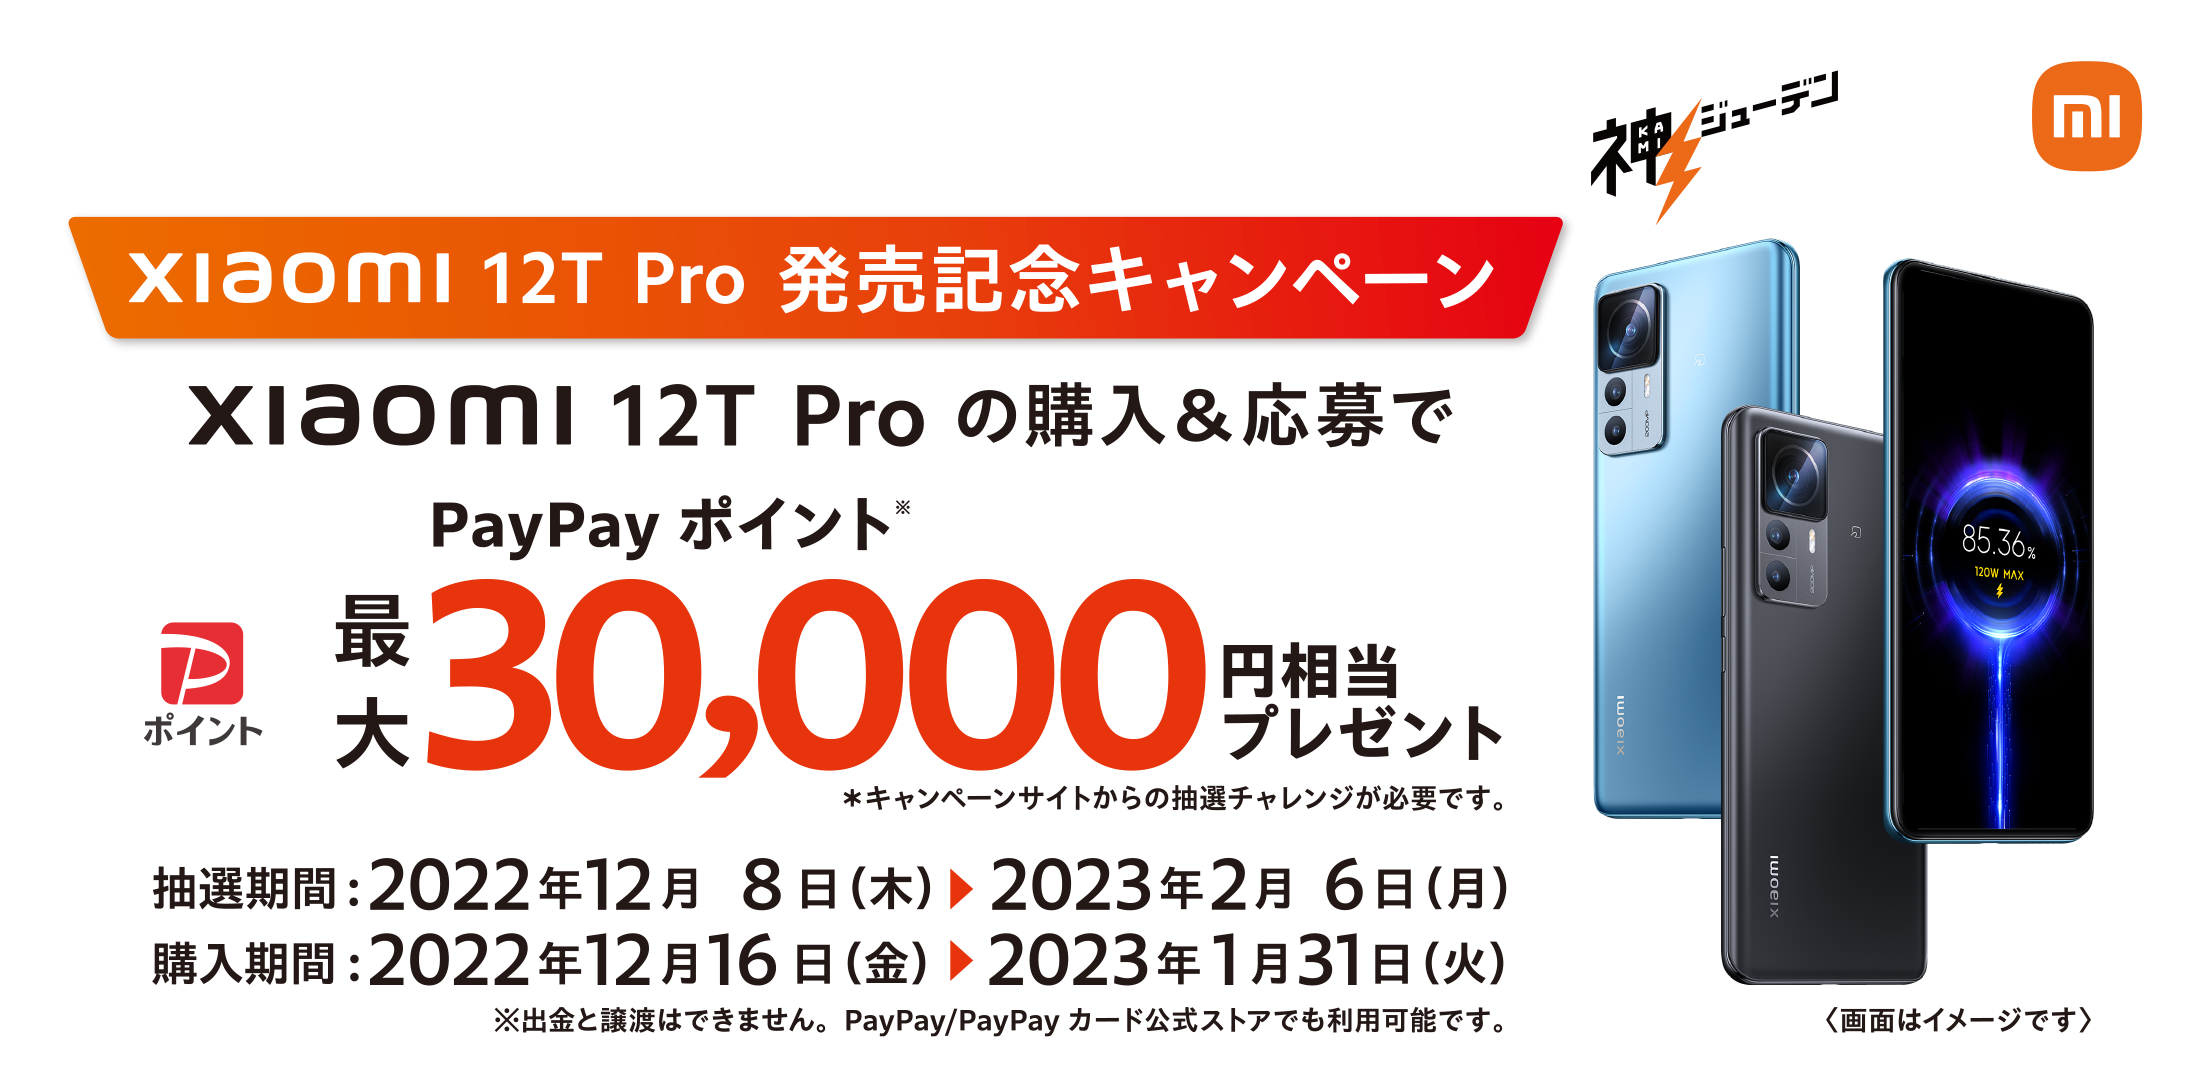 Xiaomi 12T Pro発売記念キャンペーン